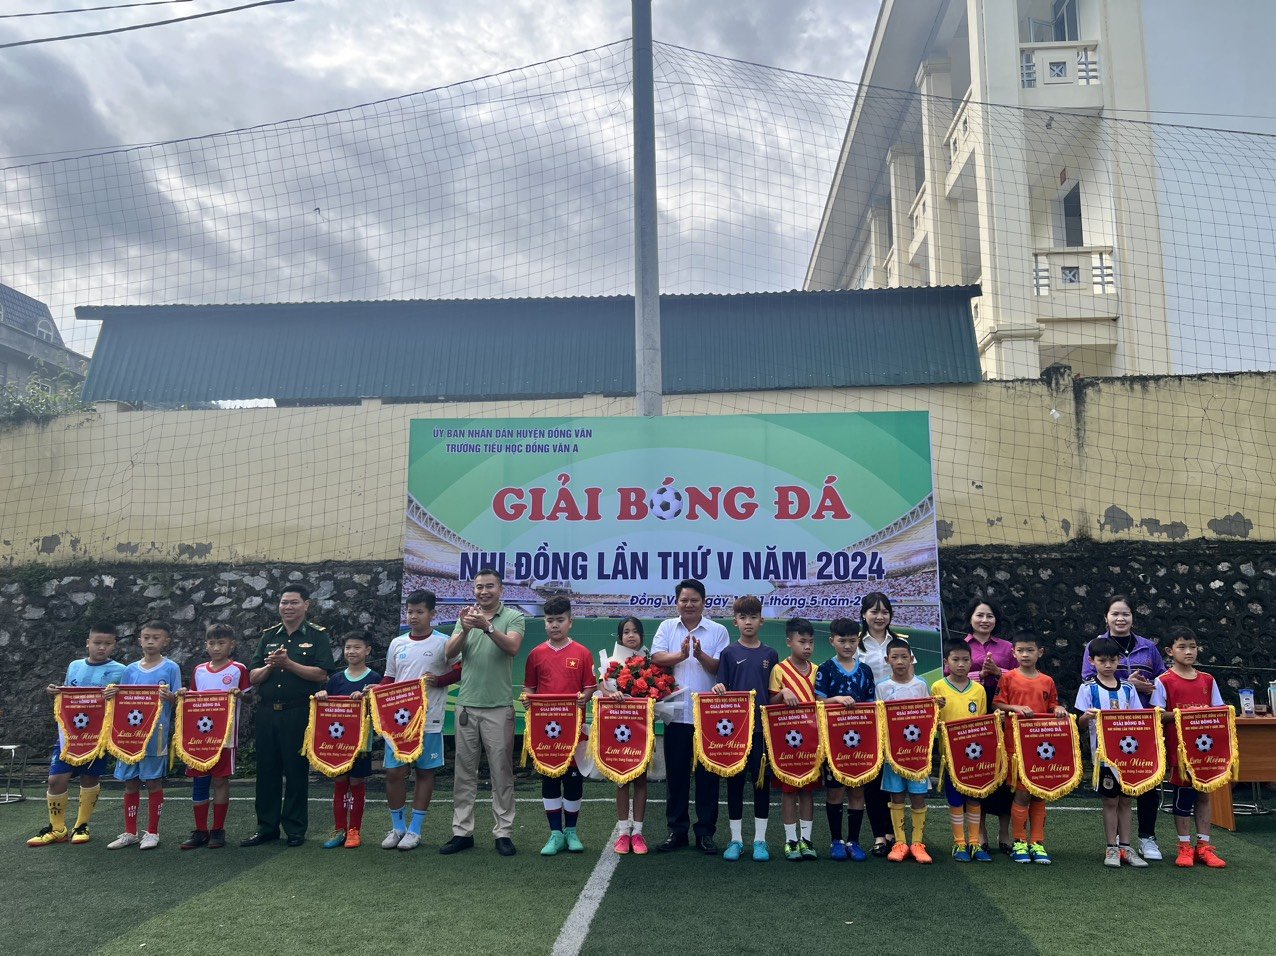 Trường tiểu học Đồng Văn A tổ chức giải bóng đá nhi đồng lần thứ V năm 2024